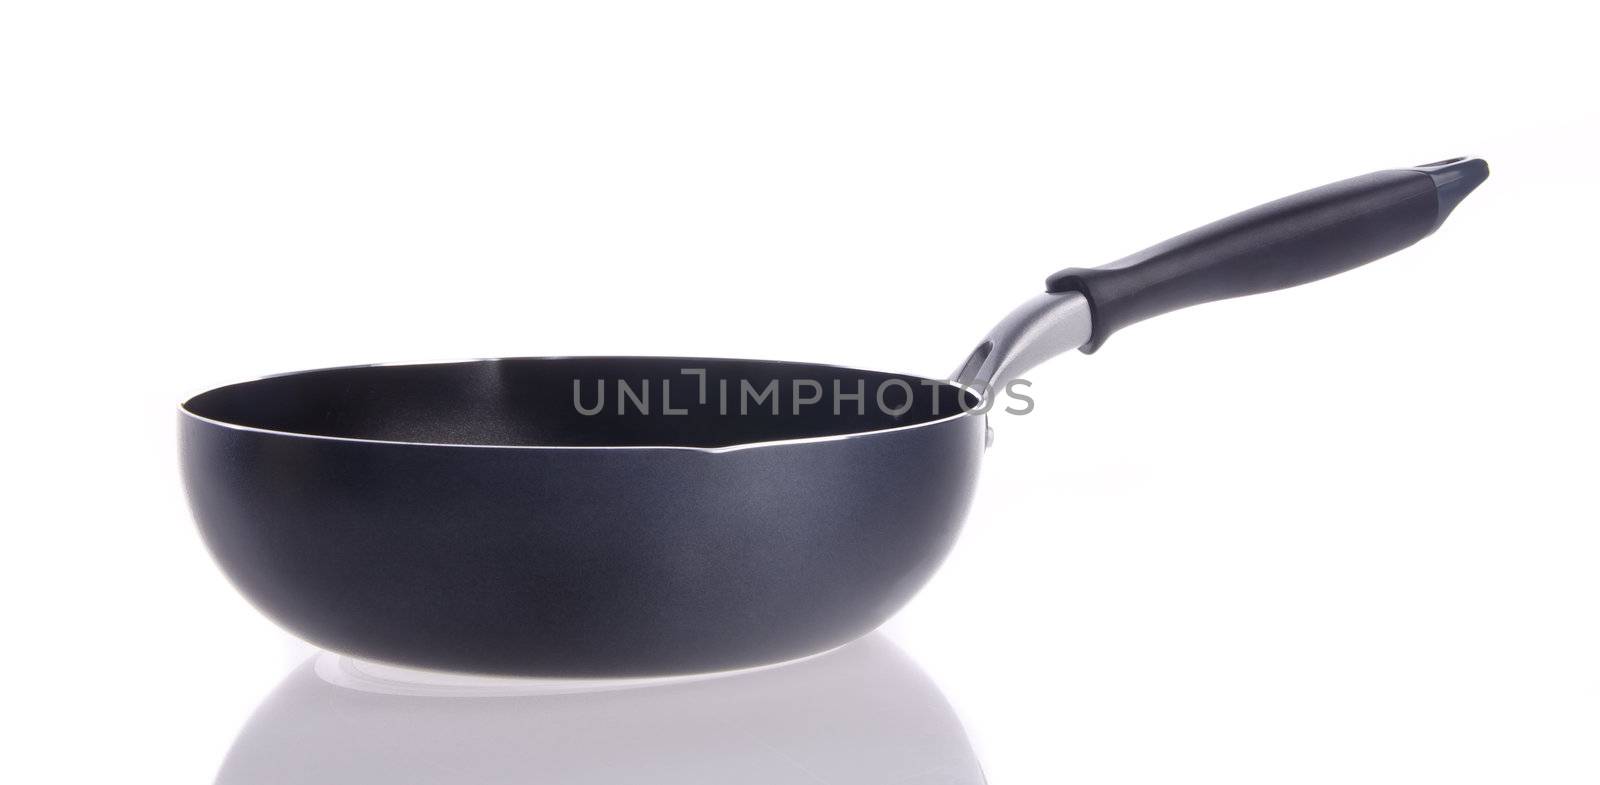 pan, metal frying pan, on background by heinteh